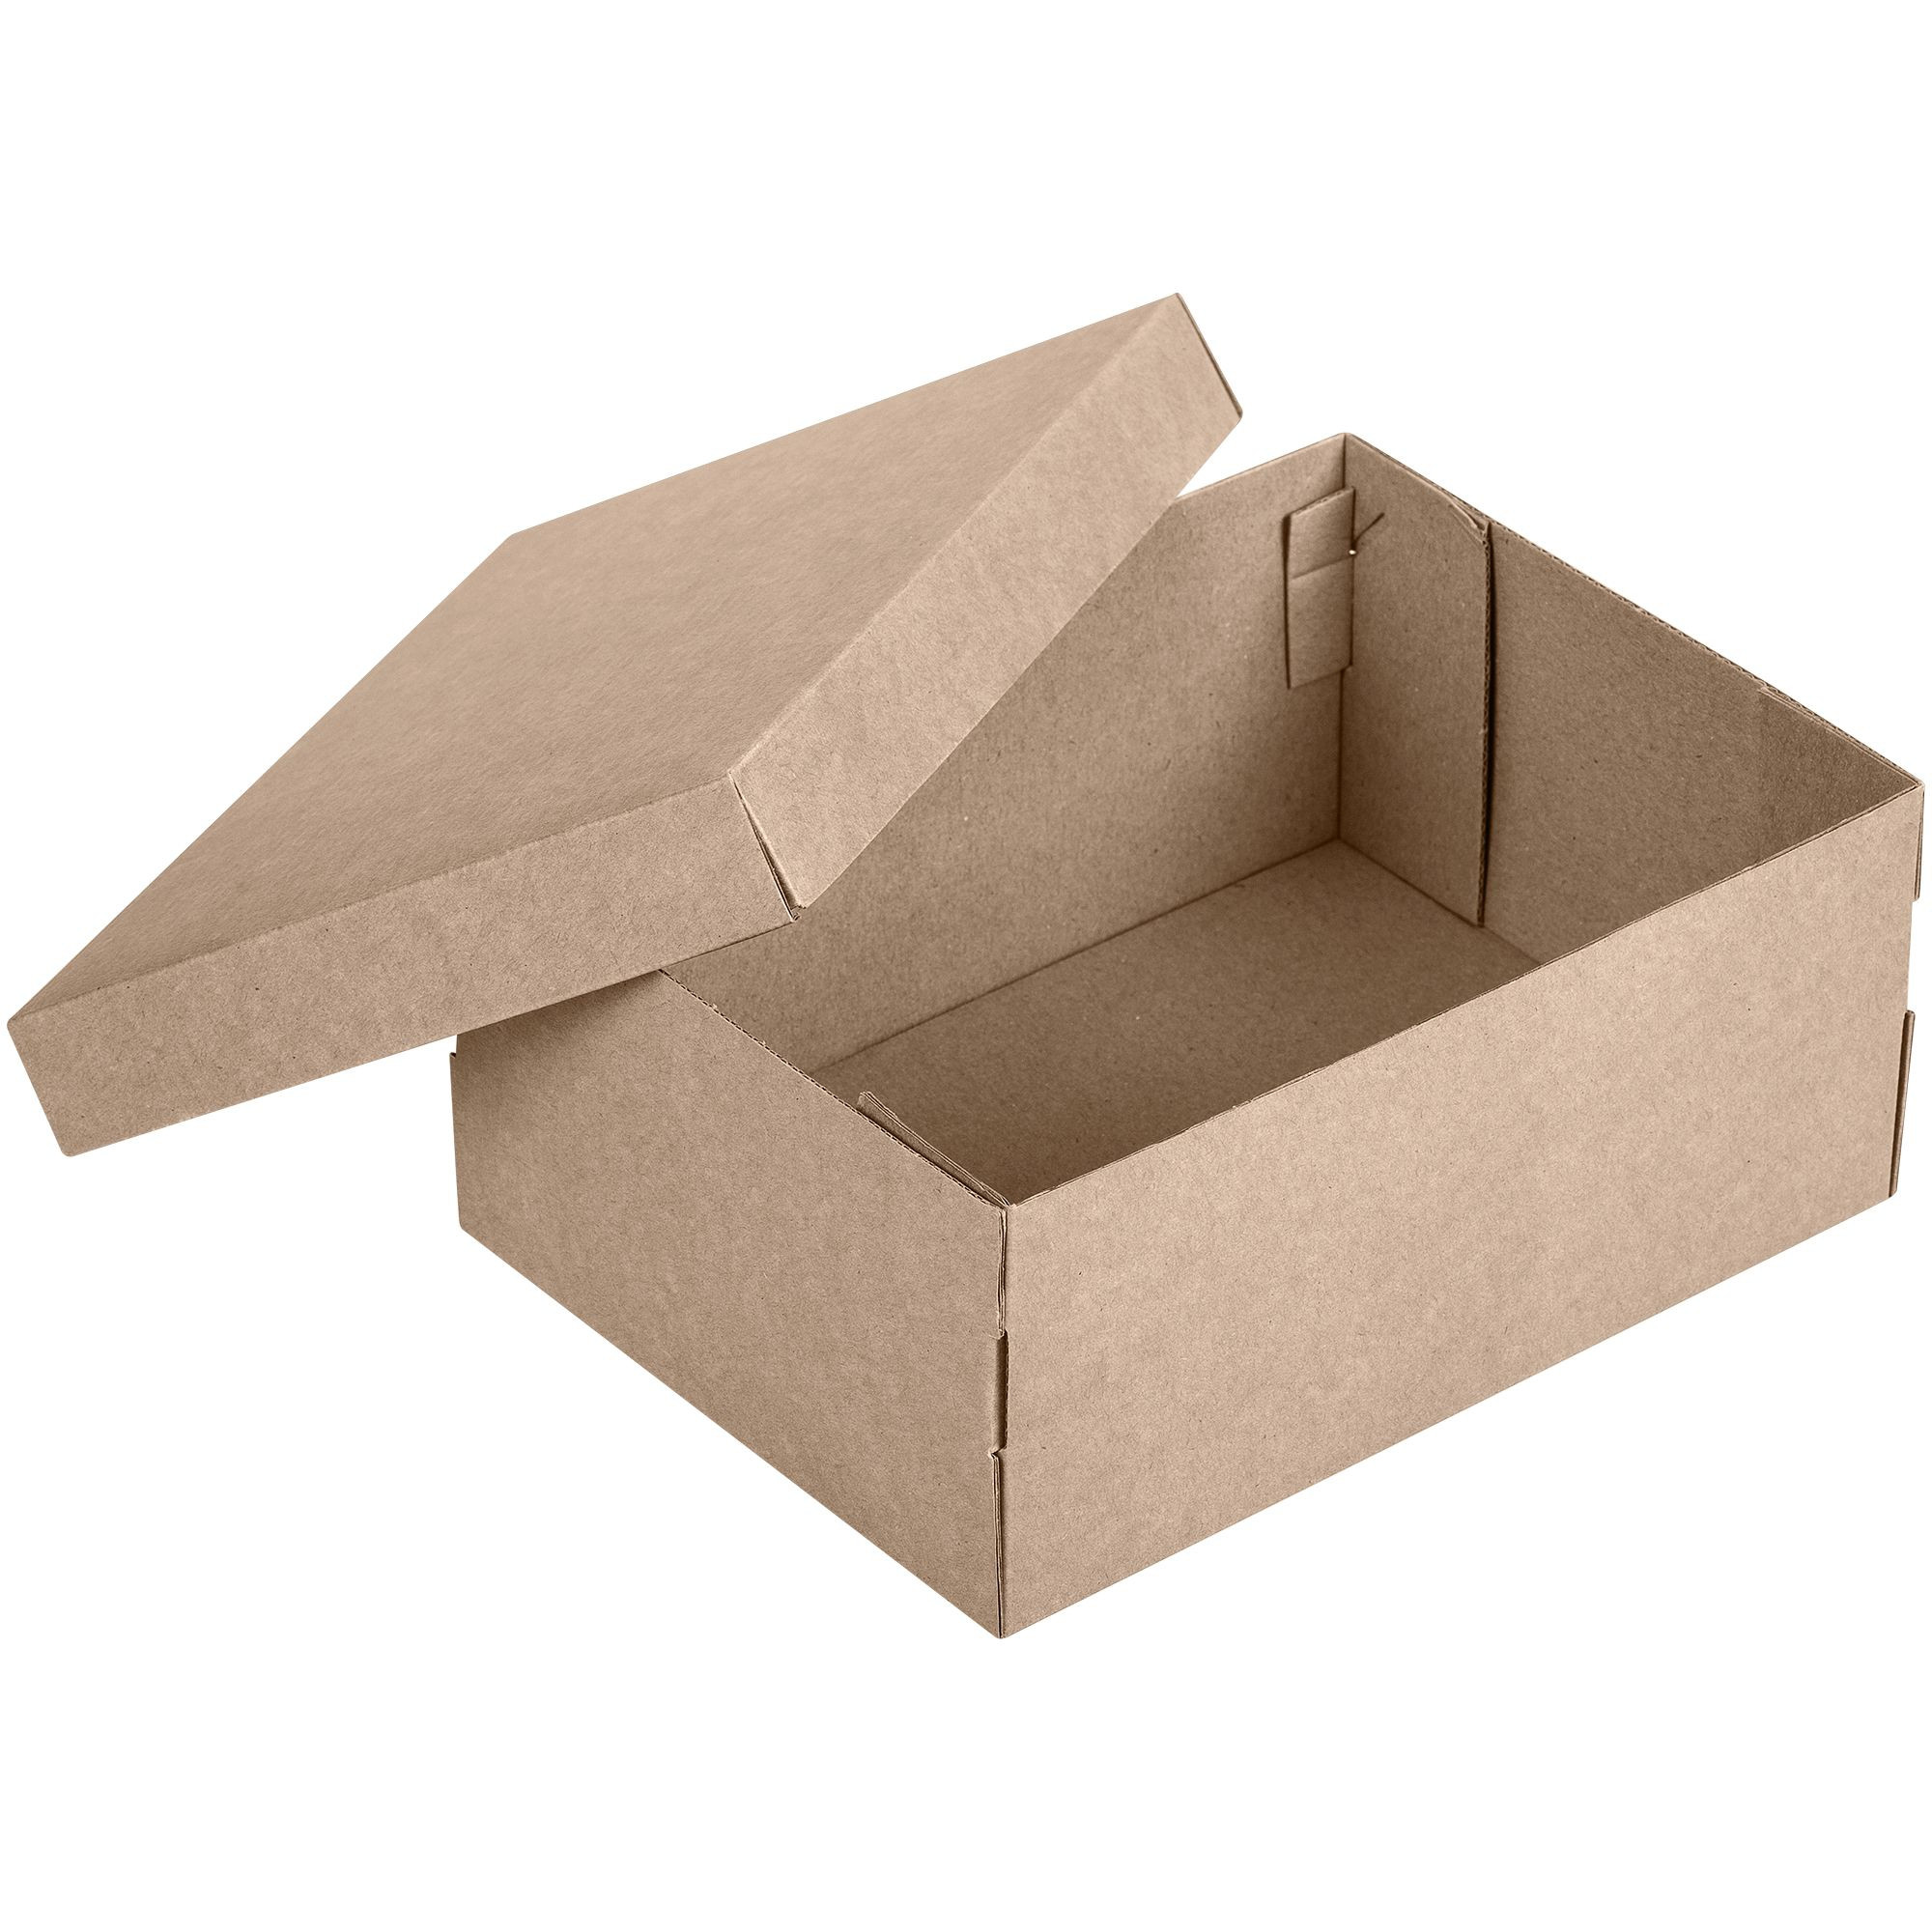 Упаковка из картона. Коробка самосборная крафт. Коробка микрогофрокартон крафт. Гофро коробки самосборные 22.5 х 22 х 7 см. Коробка подарочная крафт микрогофрокартон.